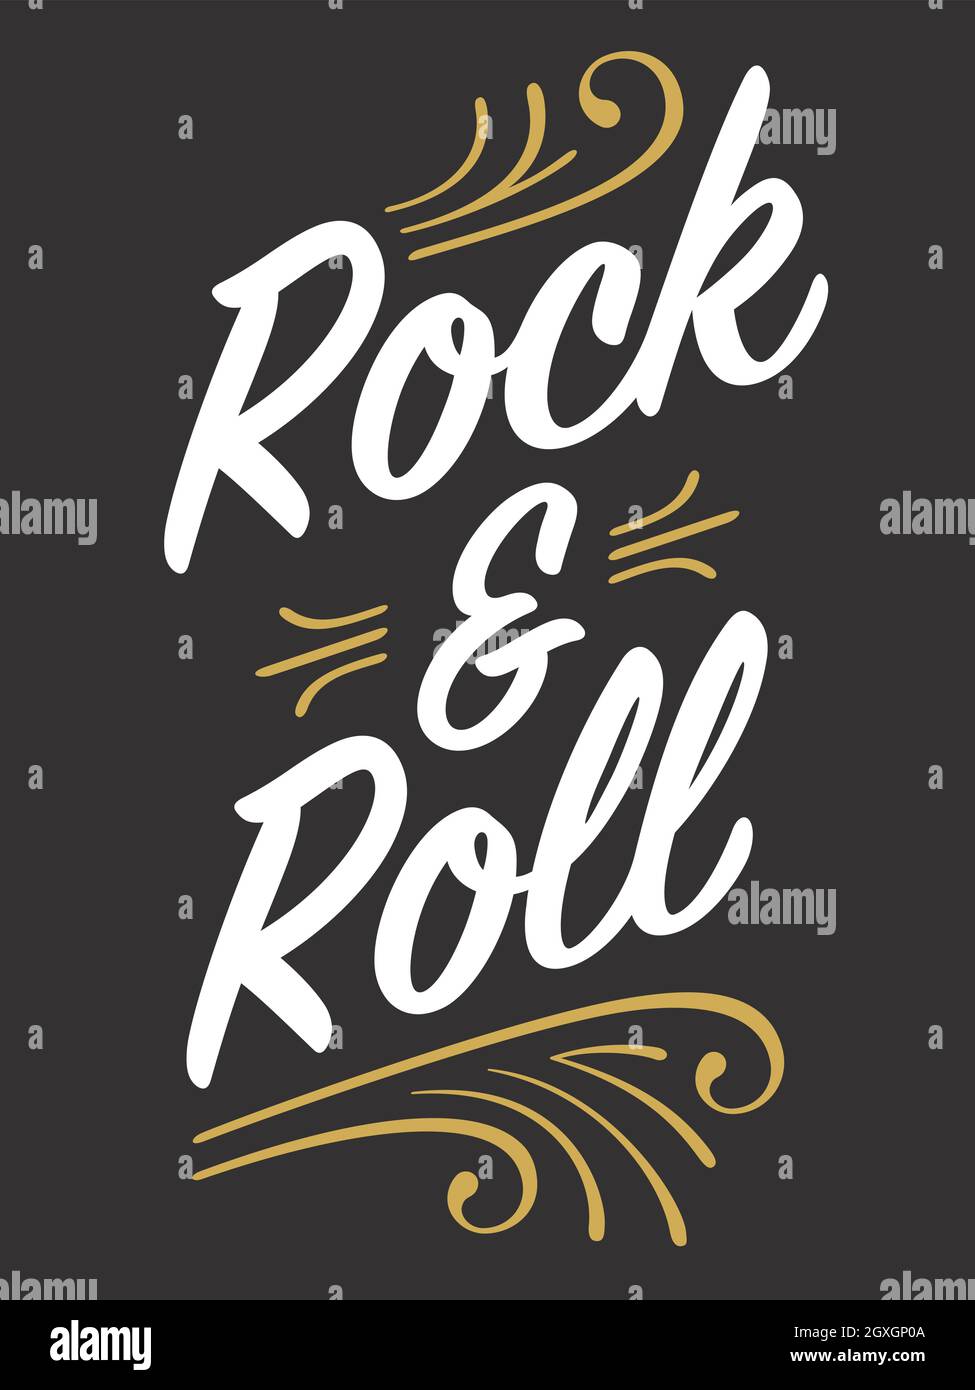 Rock and Roll Custom Schriftzug mit Nadelstreifen-Details. Vektor-Illustration von Retro-Schriftzug mit Swashes und Ornamenten. Rock and Roll wird nie sterben. Stock Vektor